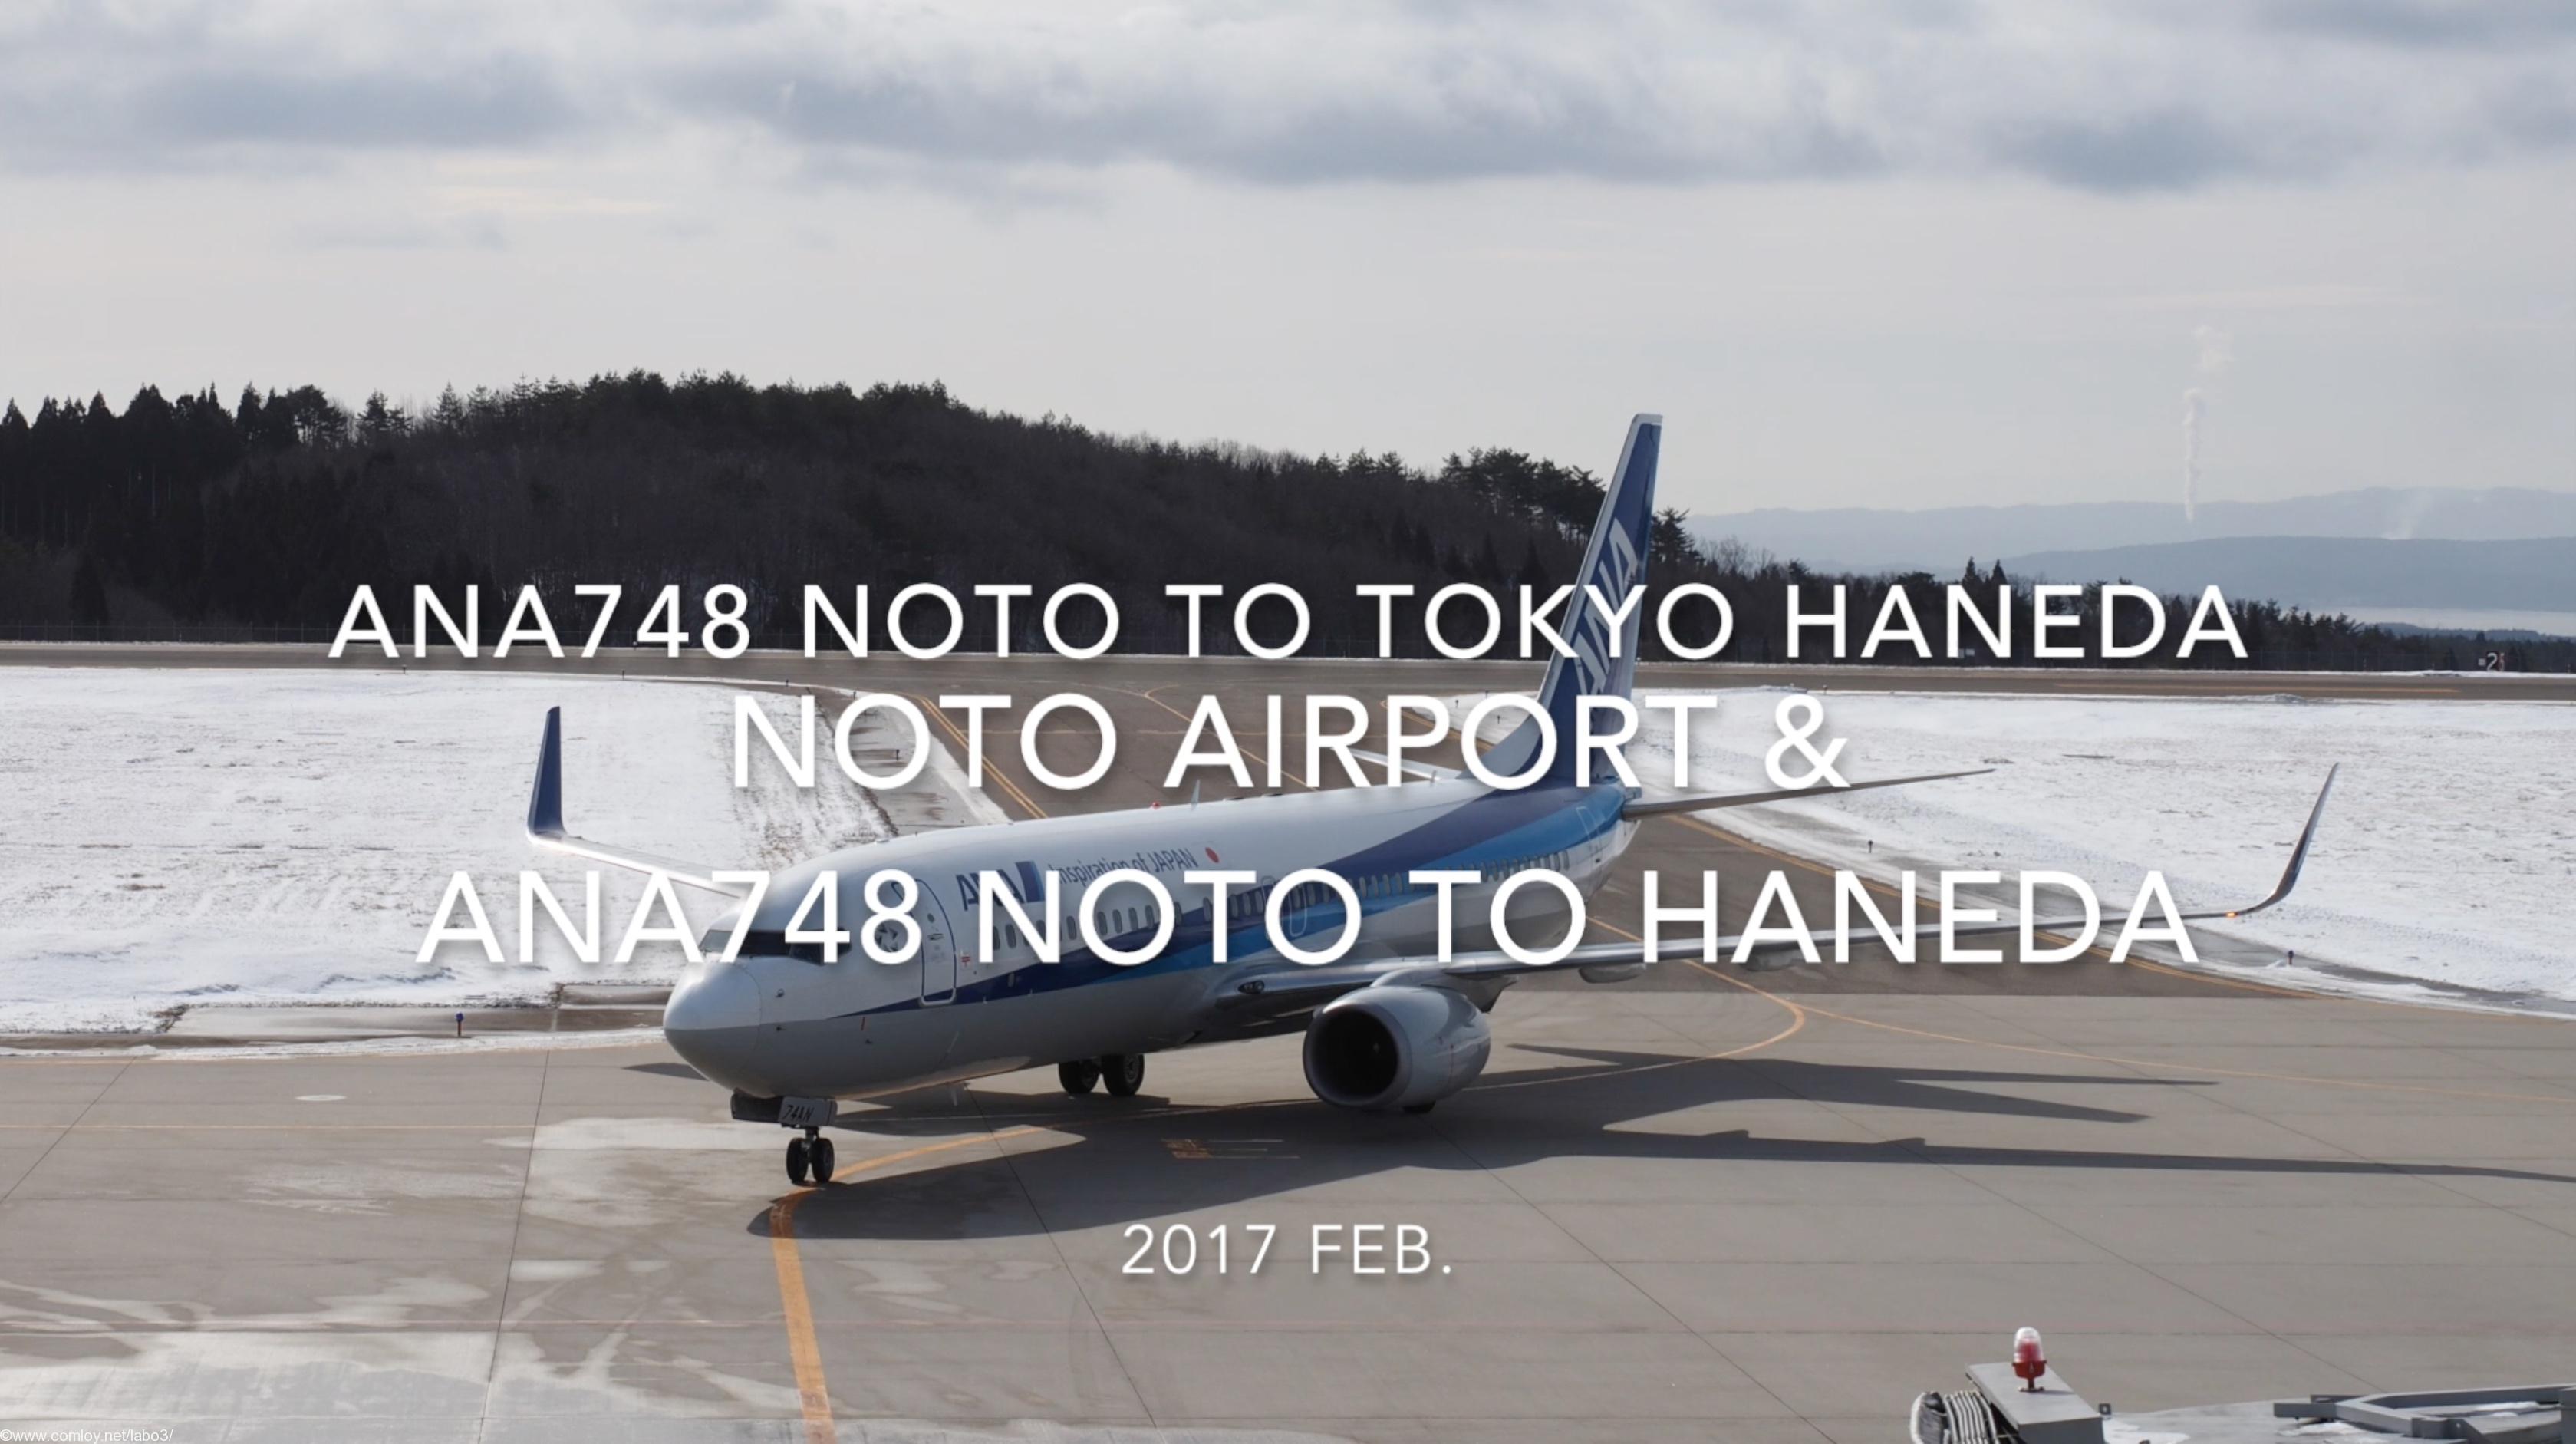 【Flight Report】NOTO airport & ANA748 NOTO to TOKYO HANEDA 2017・2 全日空 能登 - 羽田 搭乗記